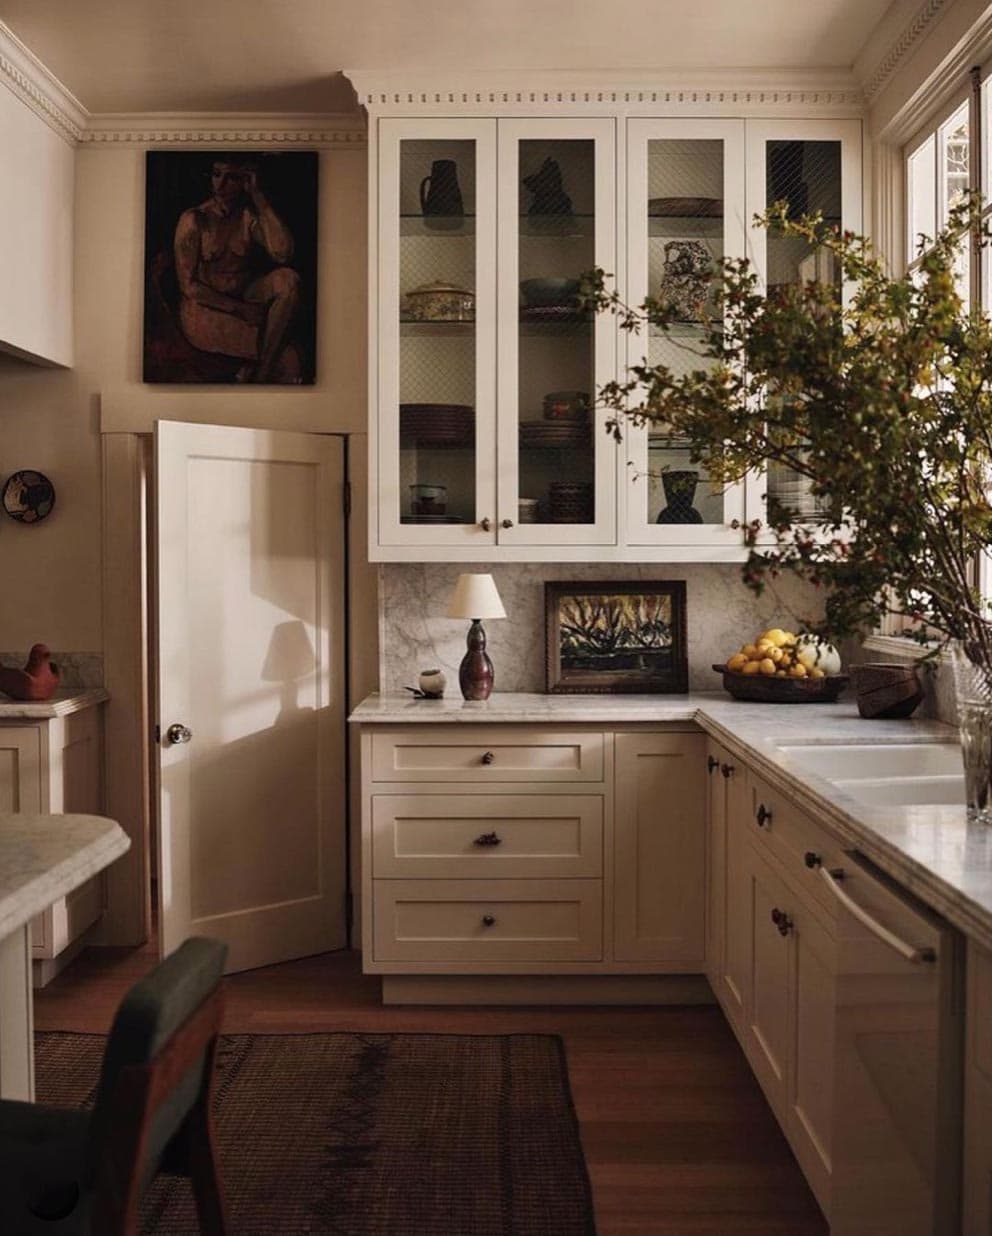 colin-king-kitchen-rich-stapleton-photo